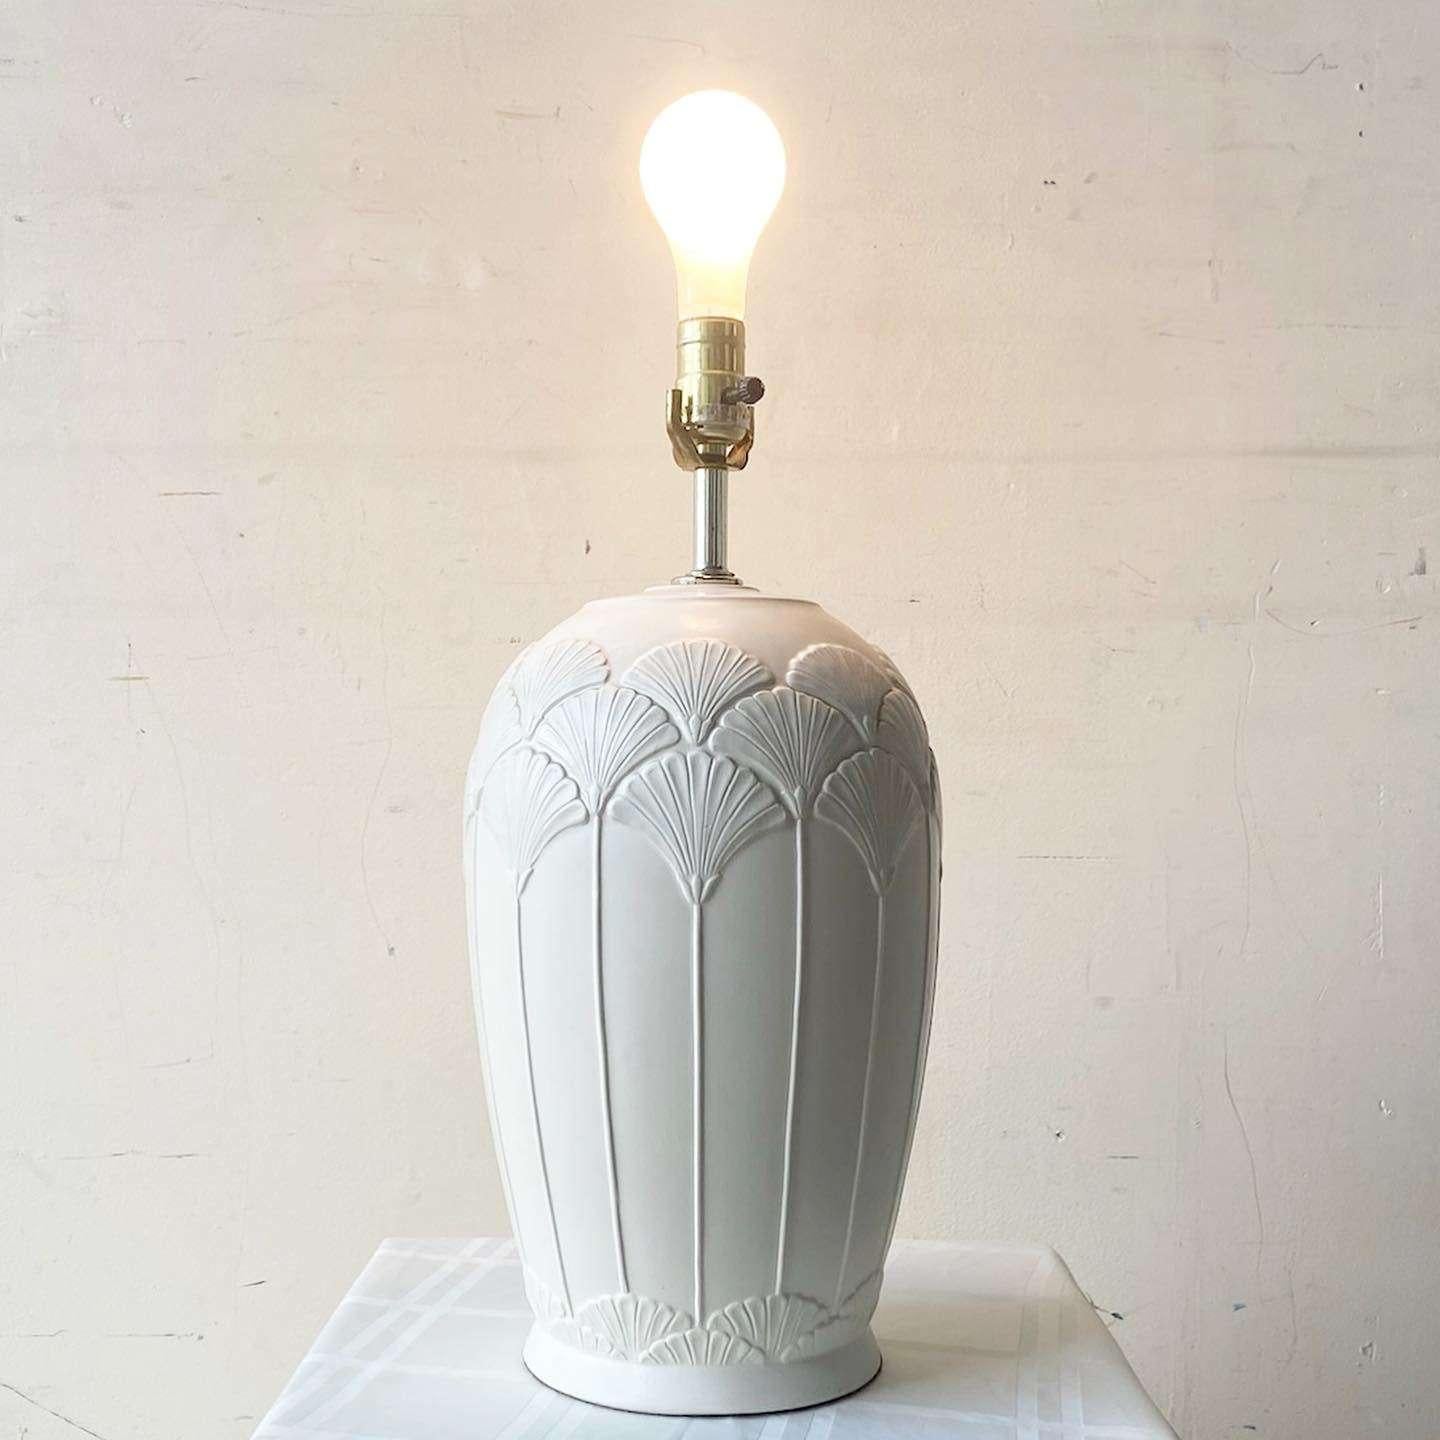 Étonnante lampe de table vintage postmoderne en céramique. Les fleurs gravées entourent le corps de la lampe en finition beige.
